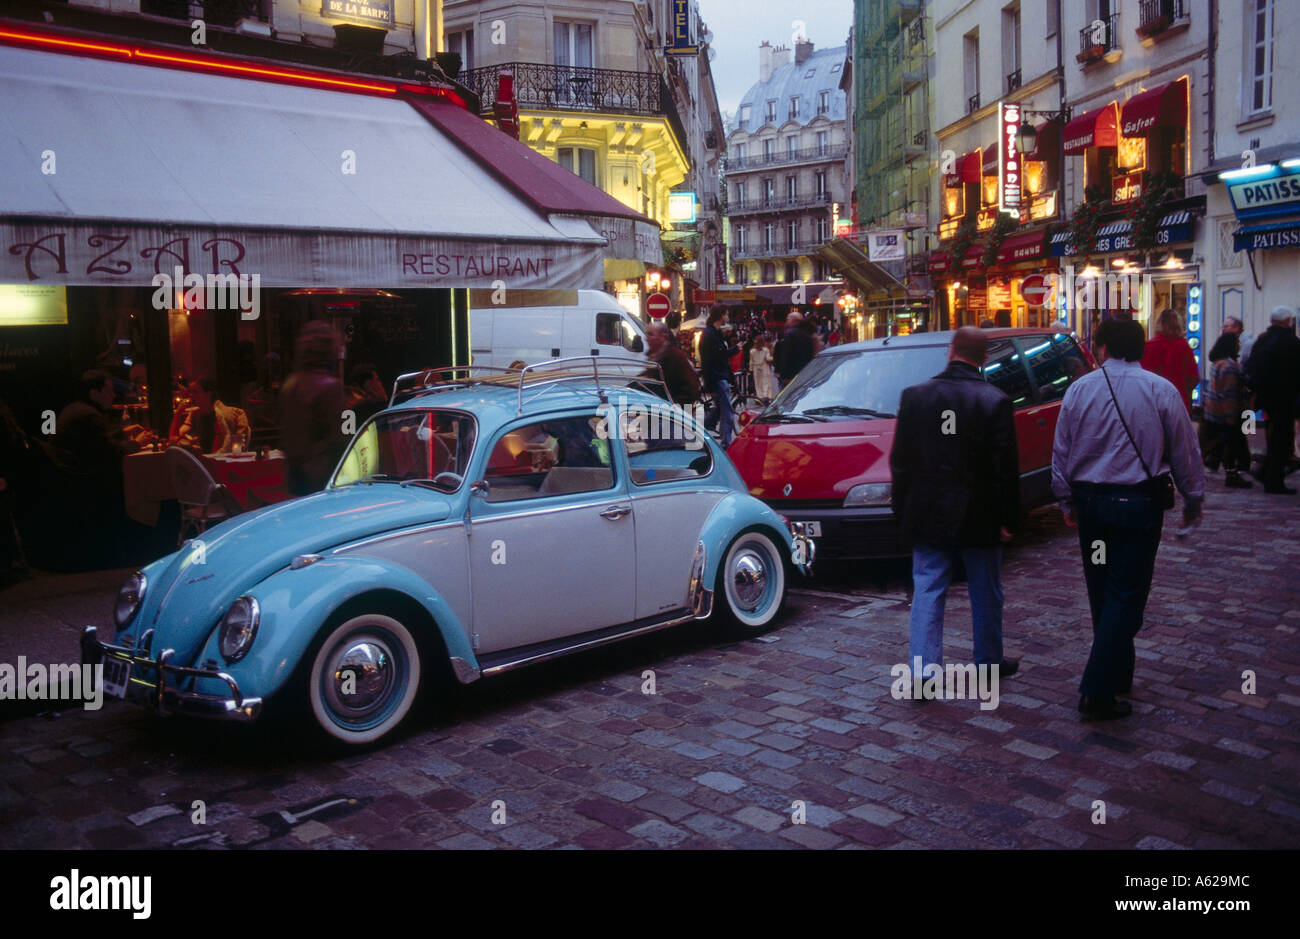 Les voitures et les touristes dans la région de rue, Paris, France Banque D'Images